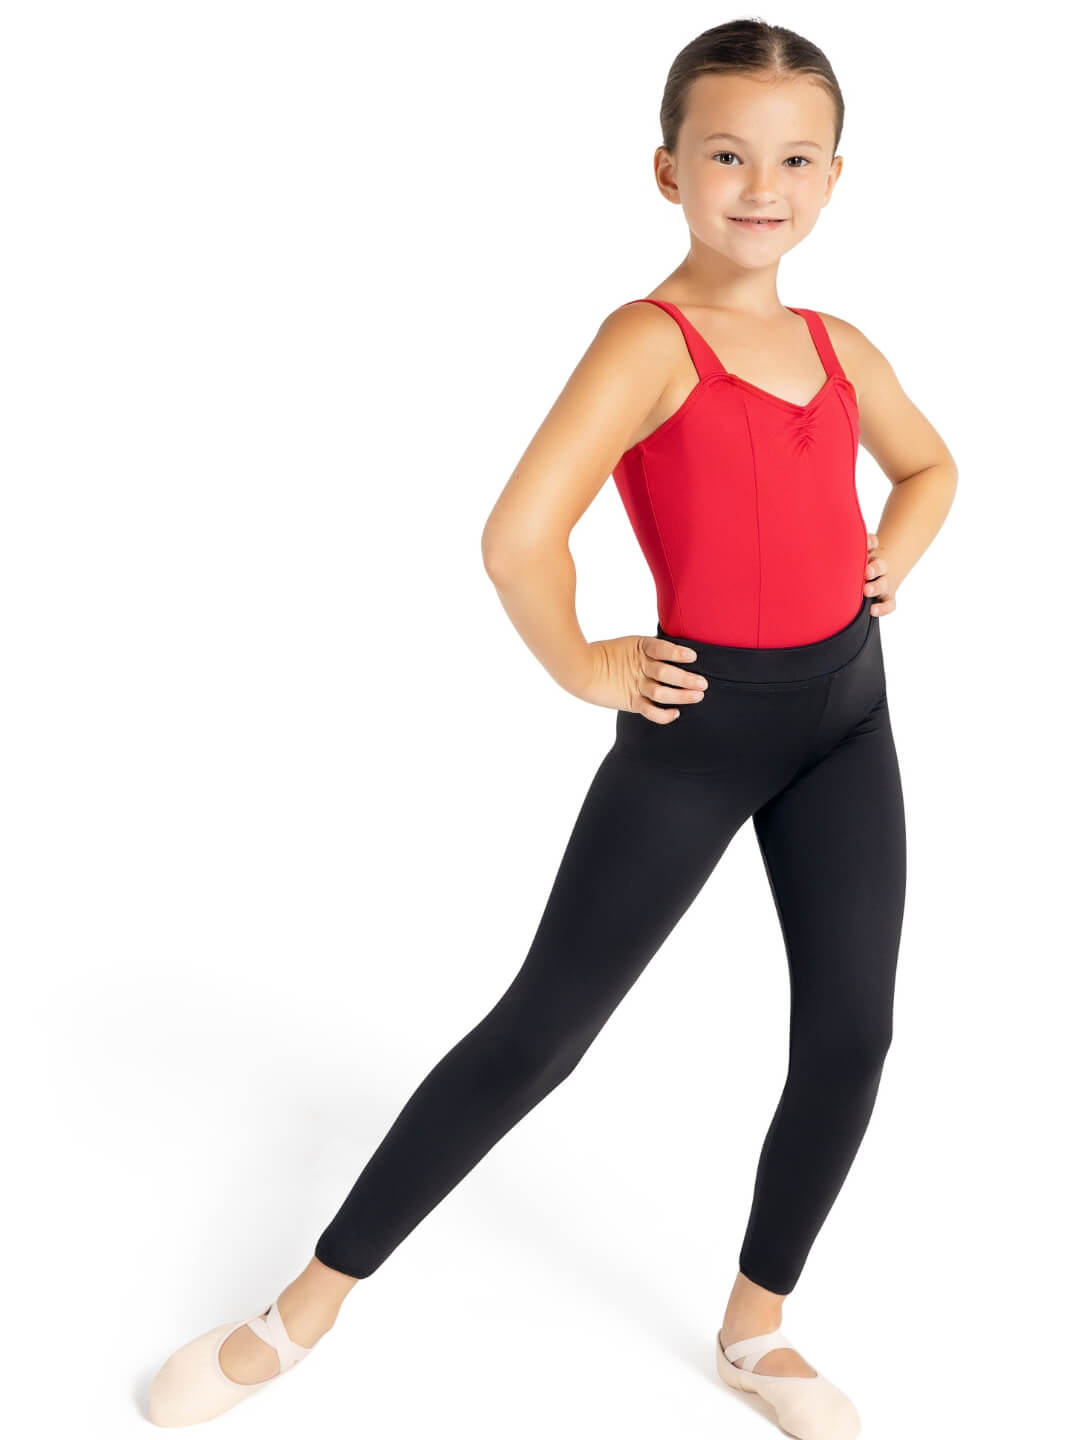 US Girls Kids Cotton Spandex Gym Gymnastics Ballet Dance Shorts Underwear  Bottom